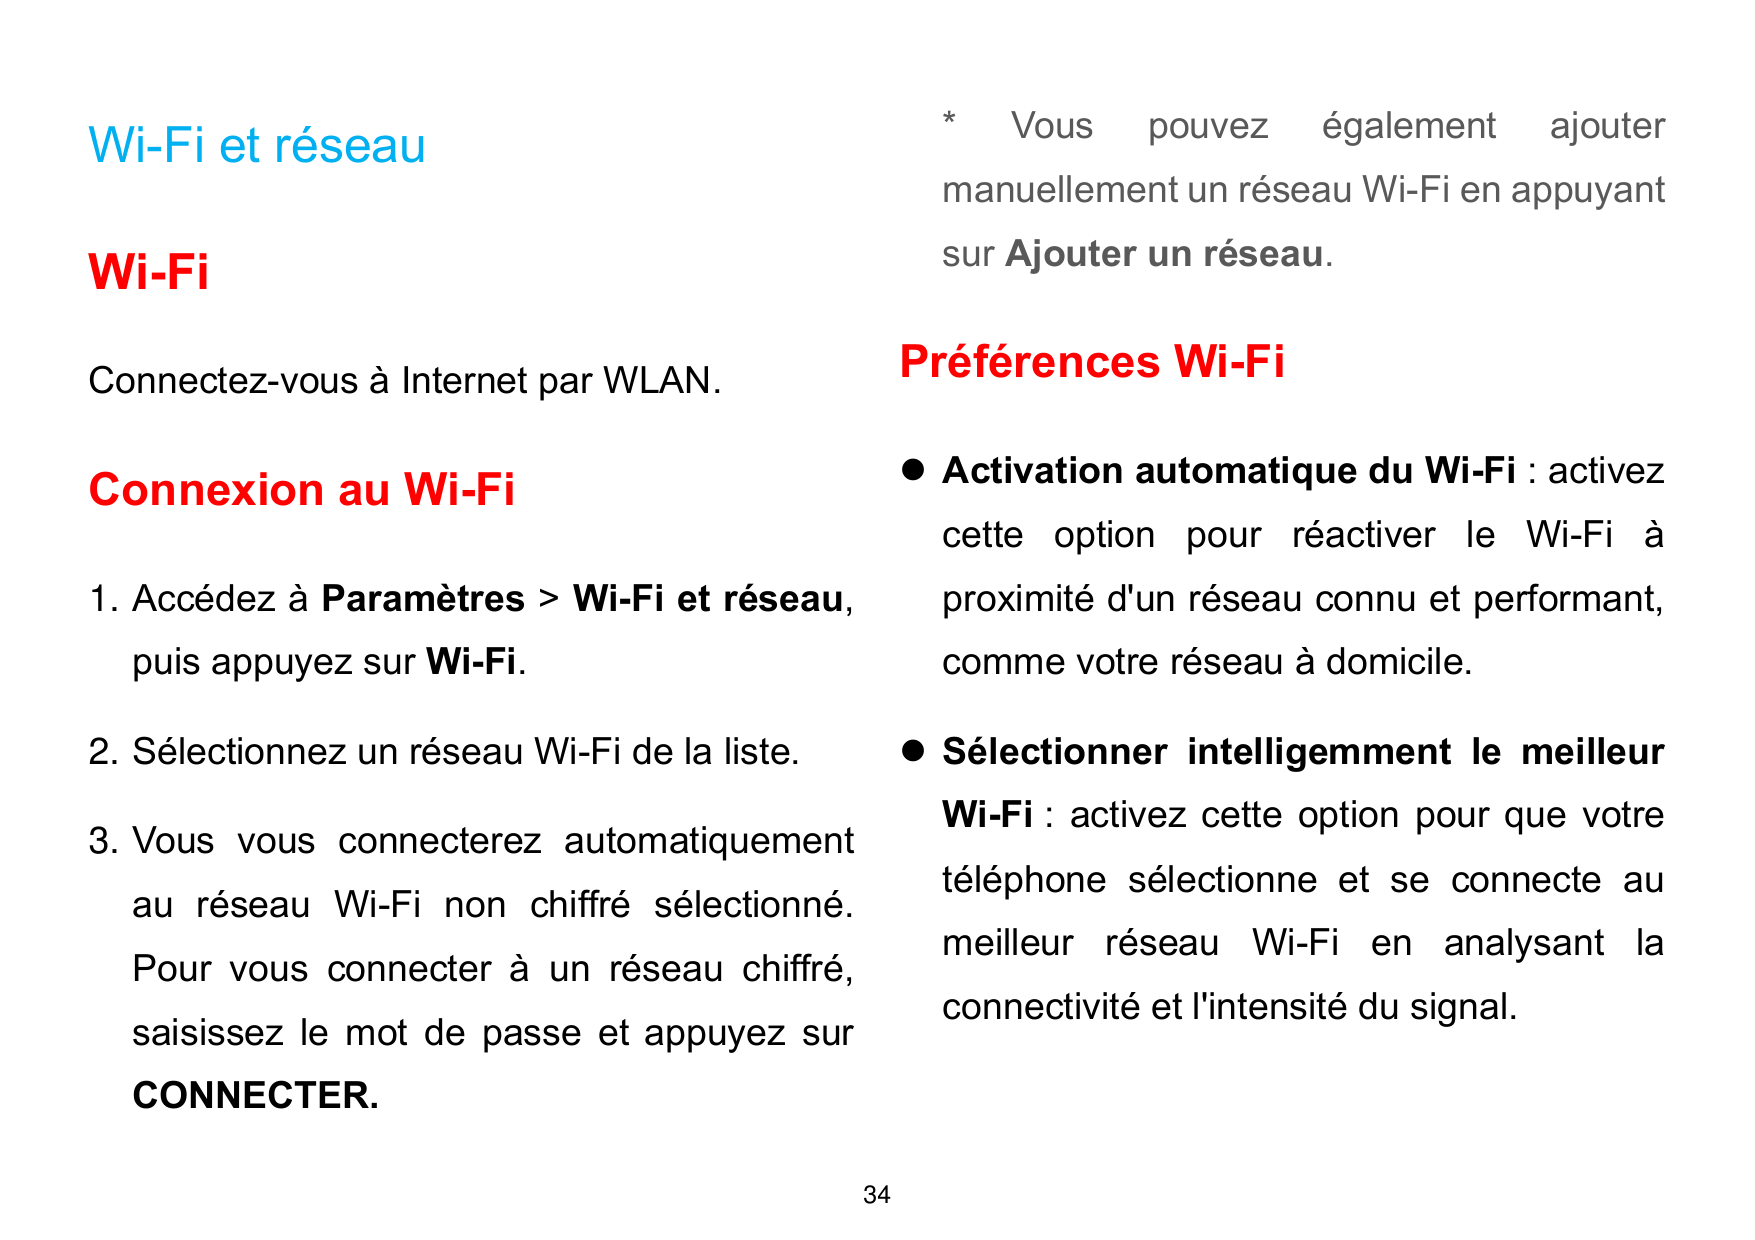 Wi-Fi et réseau*VouspouvezégalementWi-Fisur Ajouter un réseau.ajoutermanuellement un réseau Wi-Fi en appuyantPréférences Wi-FiCo